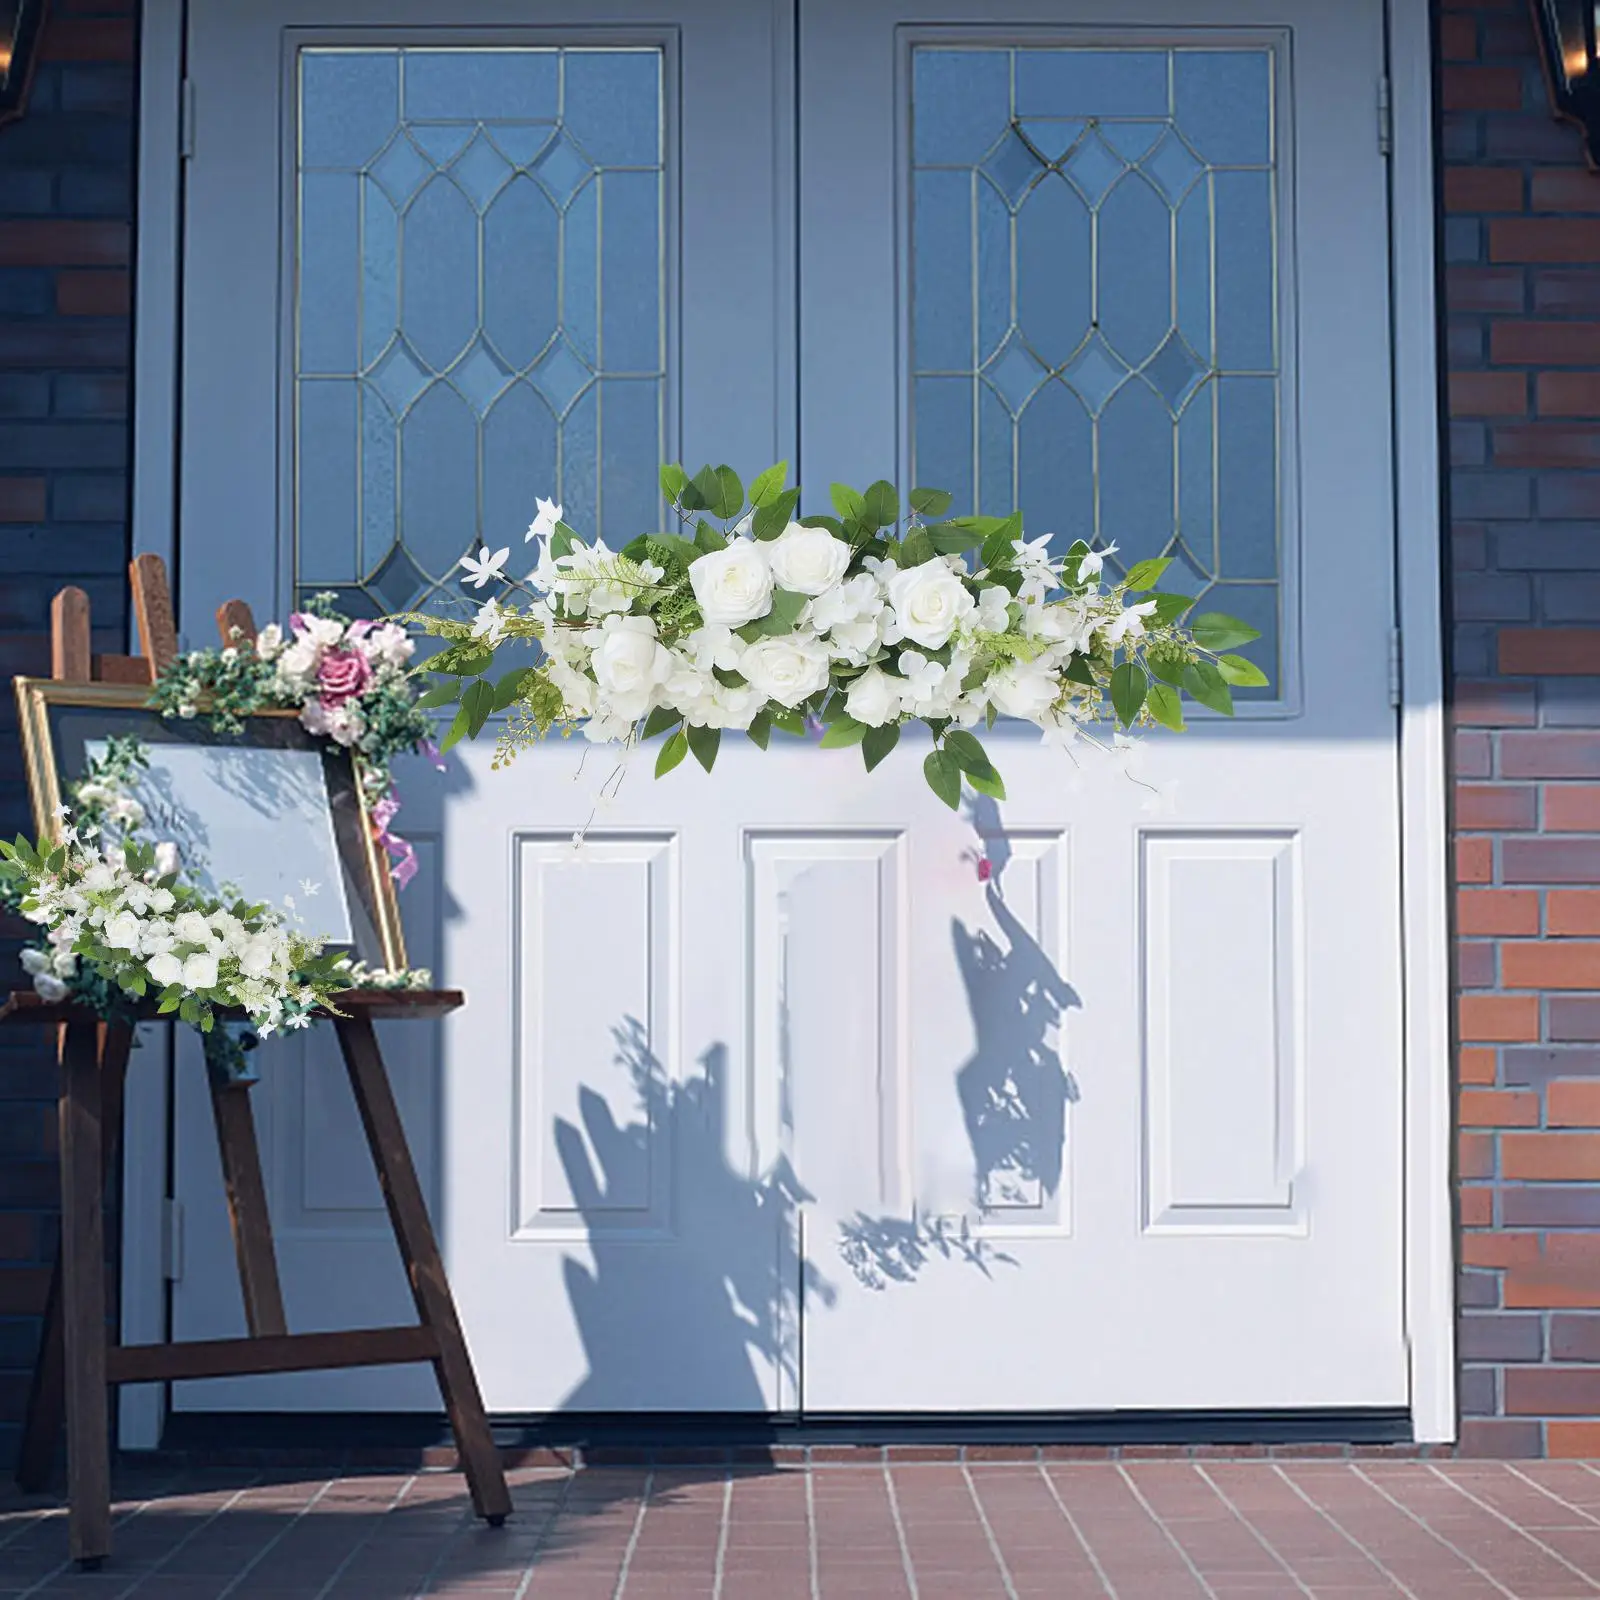 Floral Swag Door Wreath Welcome Sign Arrangements Garland for Garden Wall Door Decoration